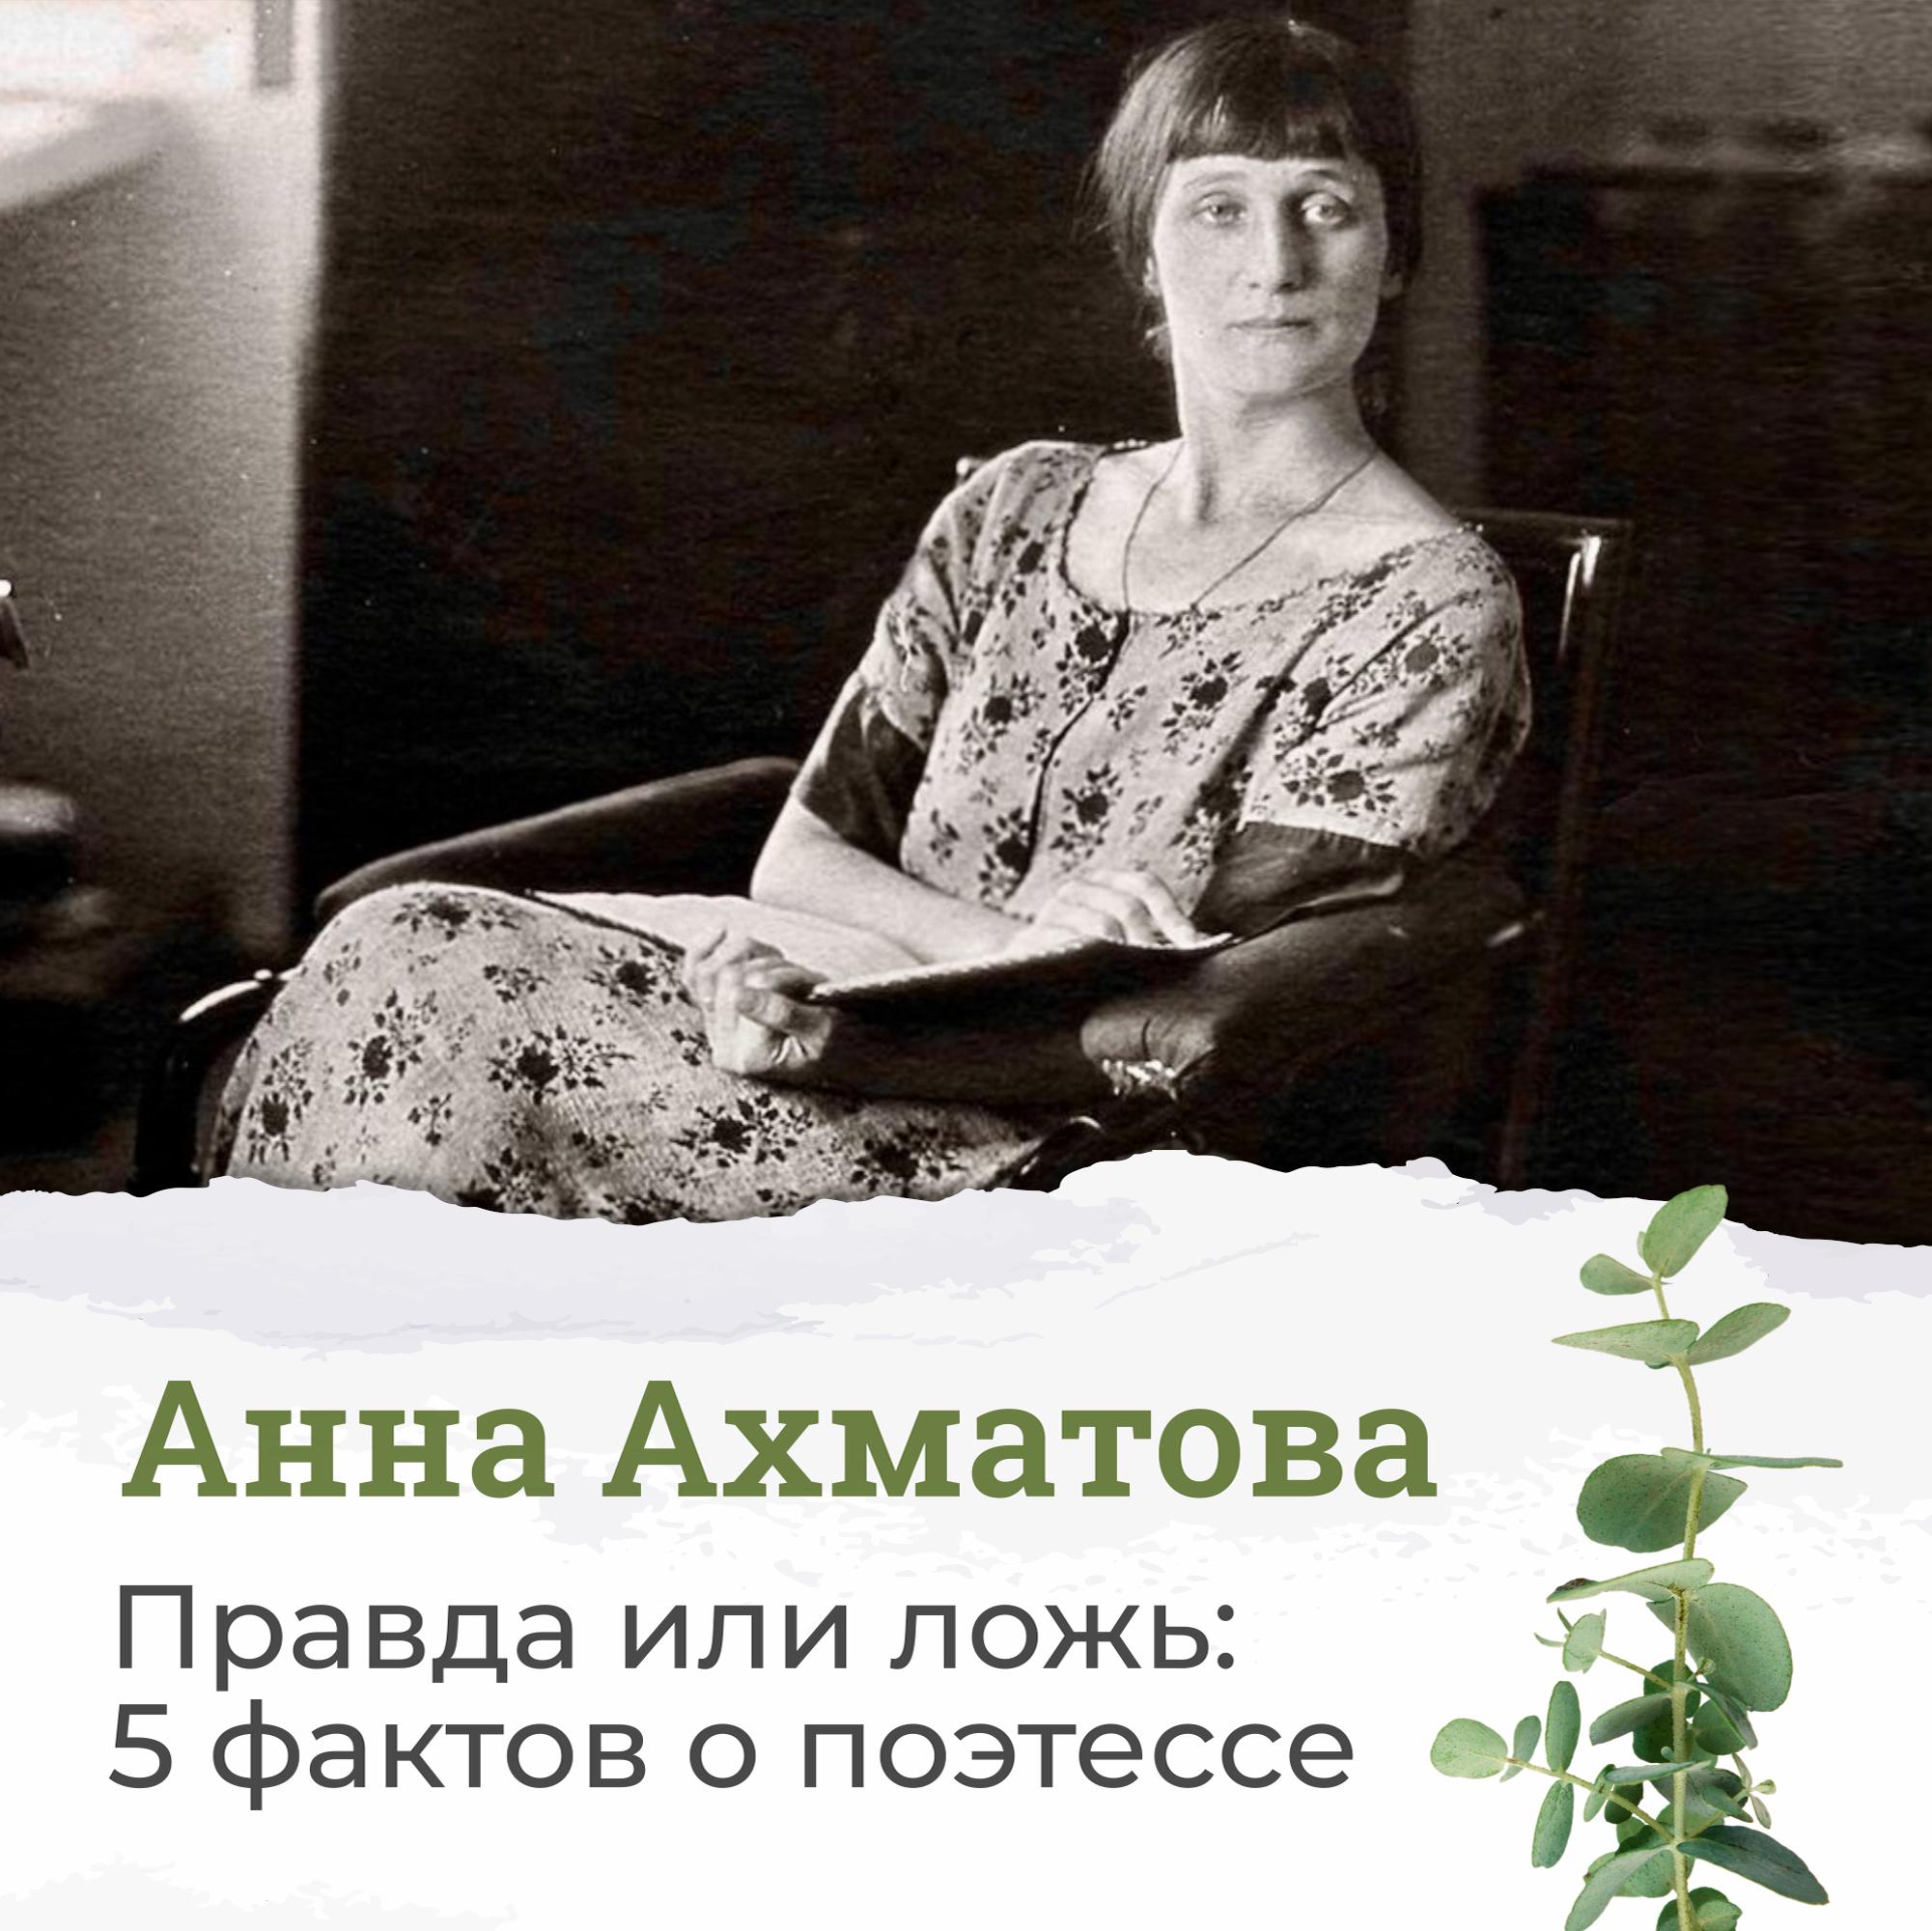 Сегодня исполняется 135 лет со дня рождения Анны Ахматовой.